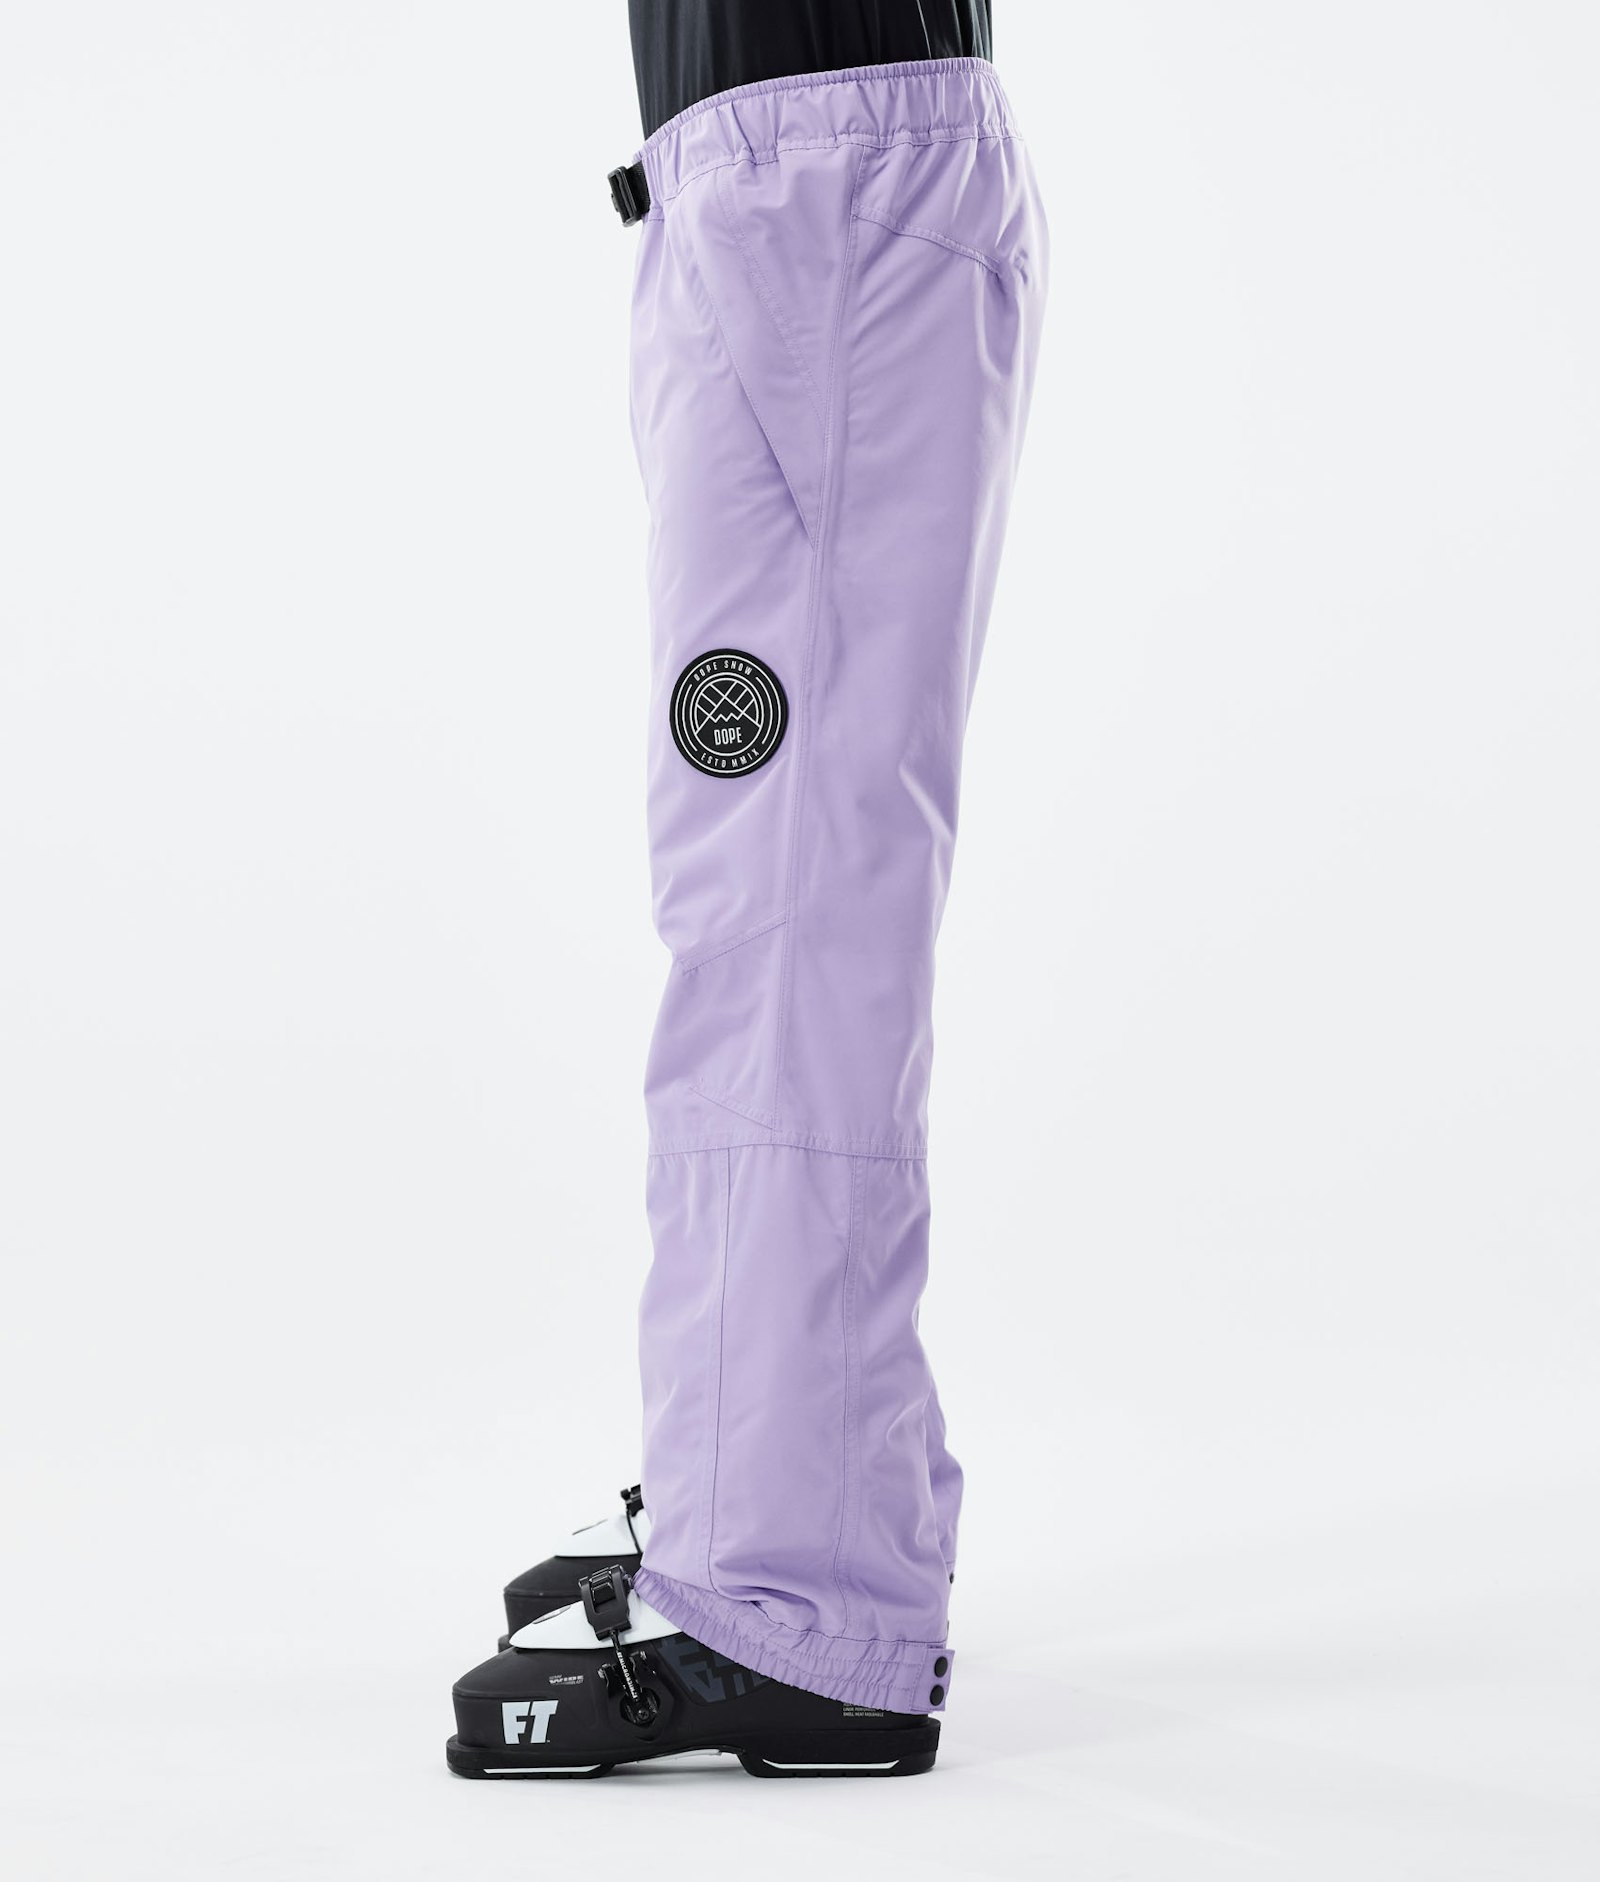 Blizzard 2021 Pantalon de Ski Homme Faded Violet